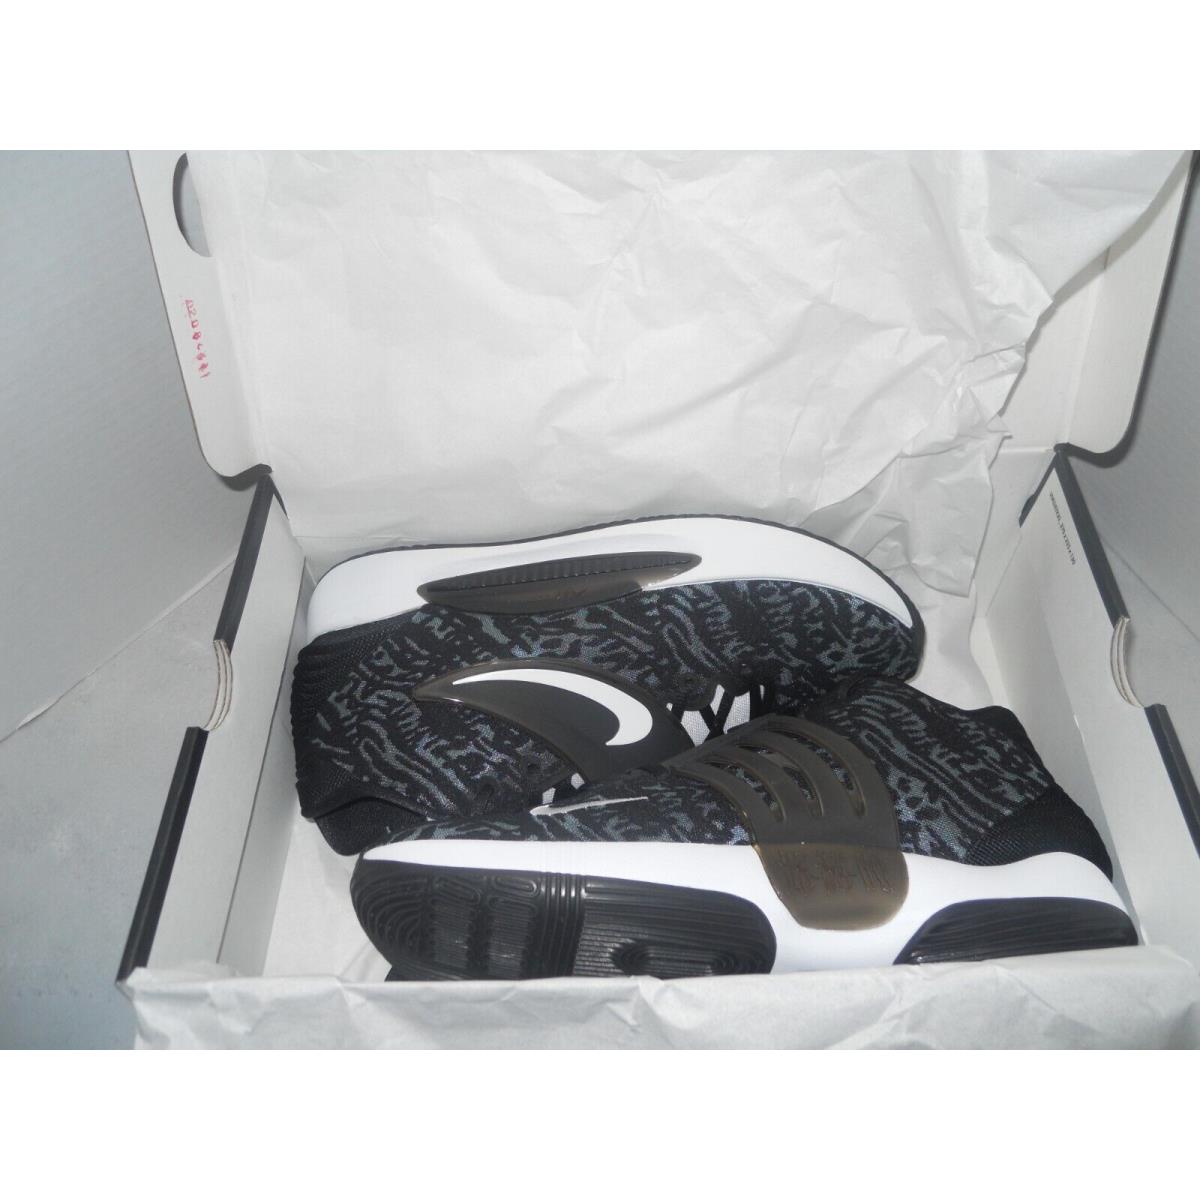 Nike shoes PROMO - Black 8